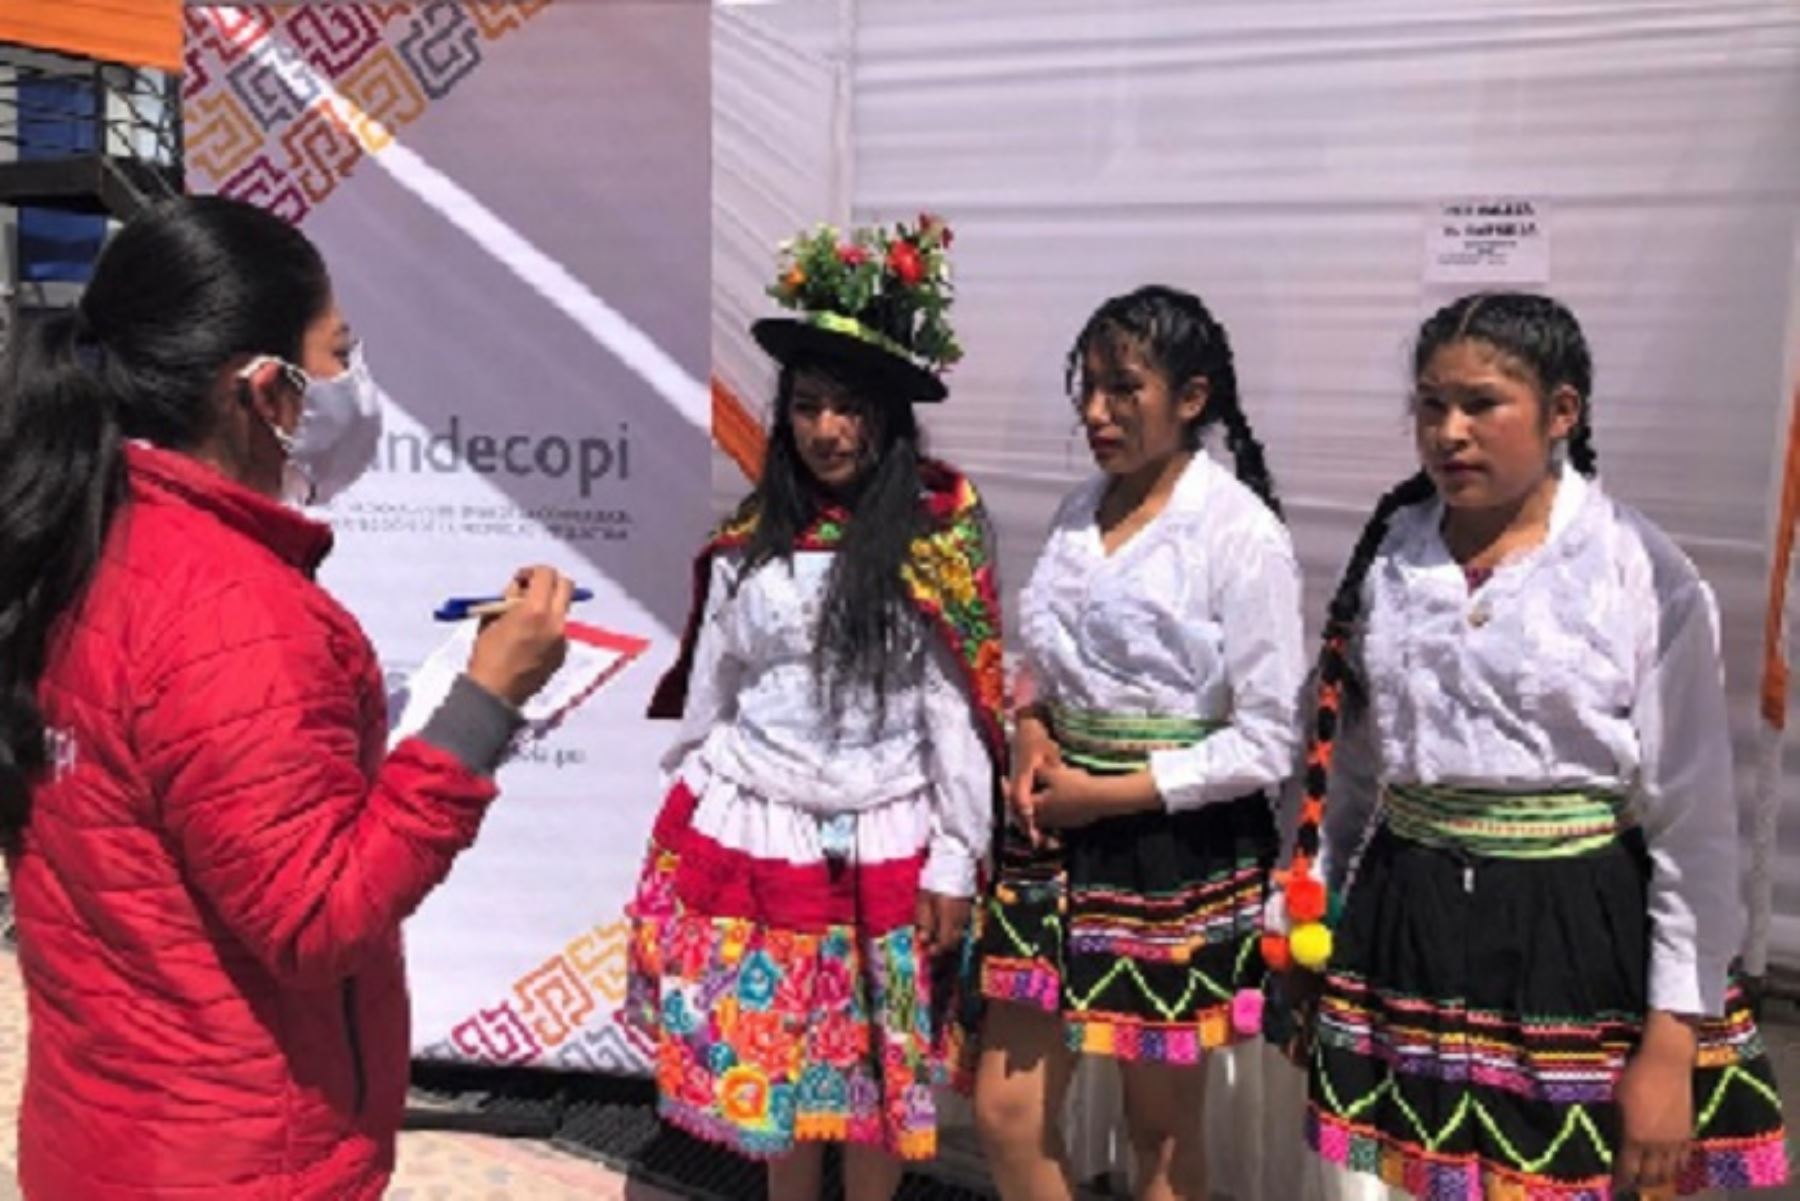 Ayacucho: Indecopi empoderó a jóvenes sobre sus derechos como consumidores